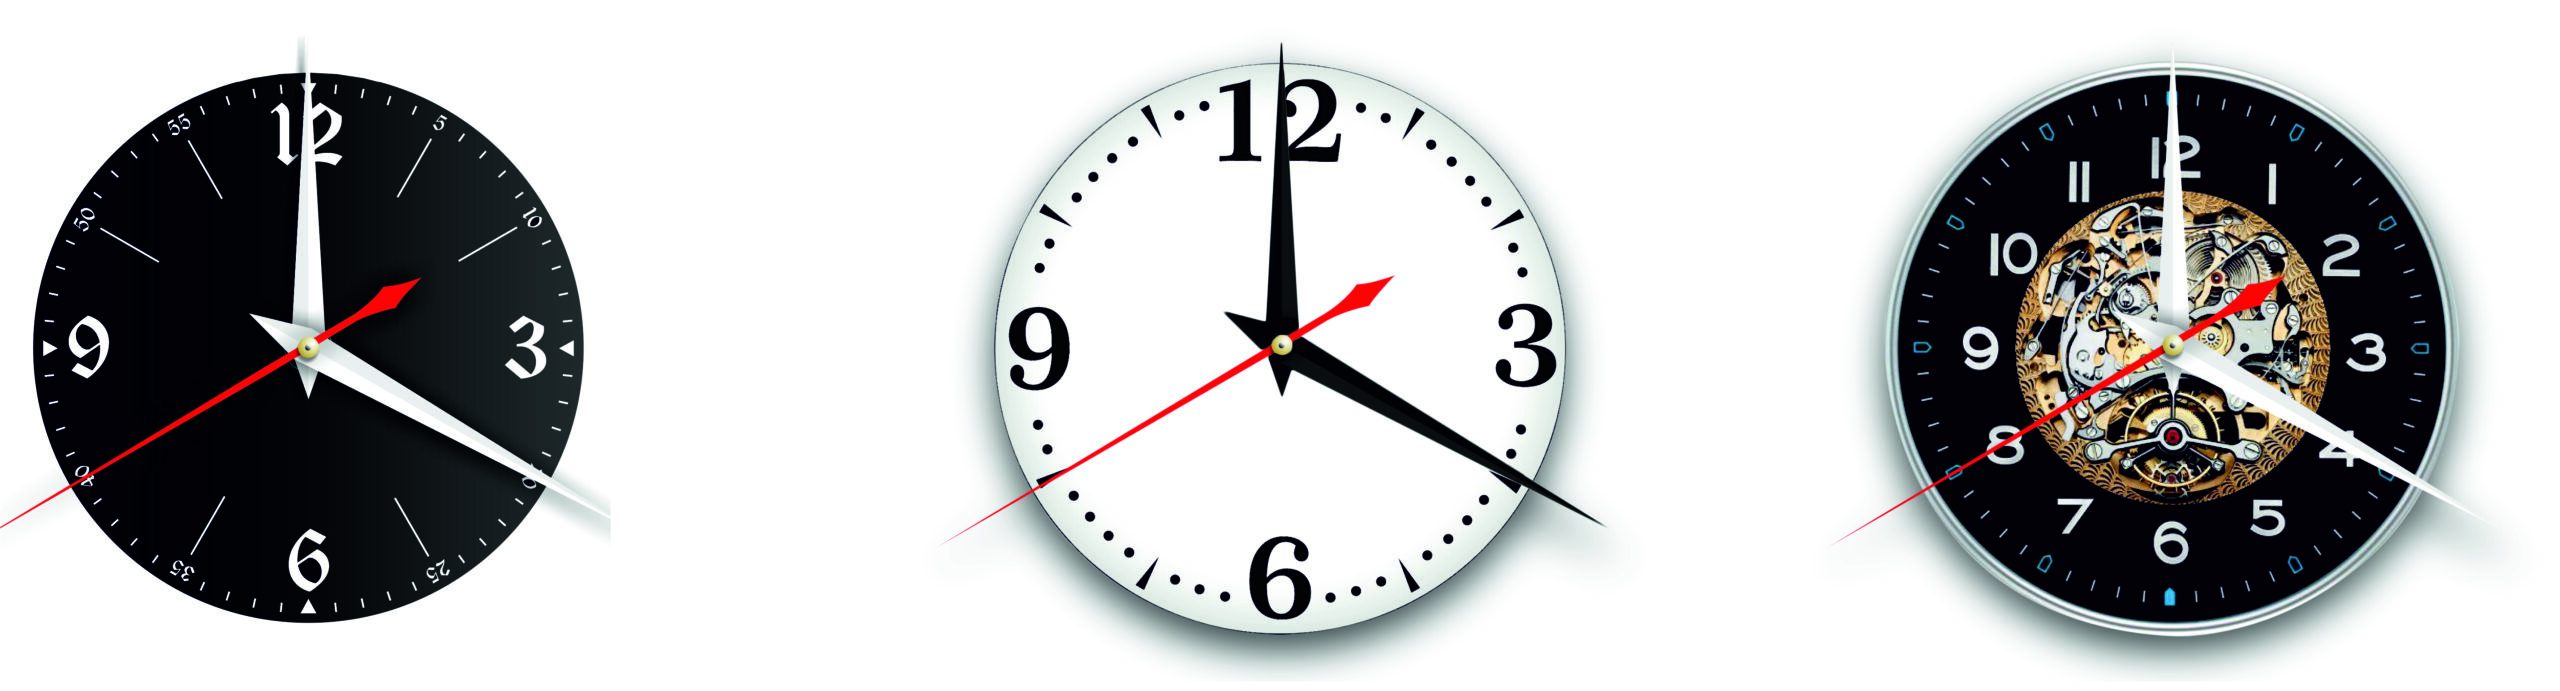 Ундервуд [Версия 1]. Дизайнерские часы из настоящей виниловой пластинки